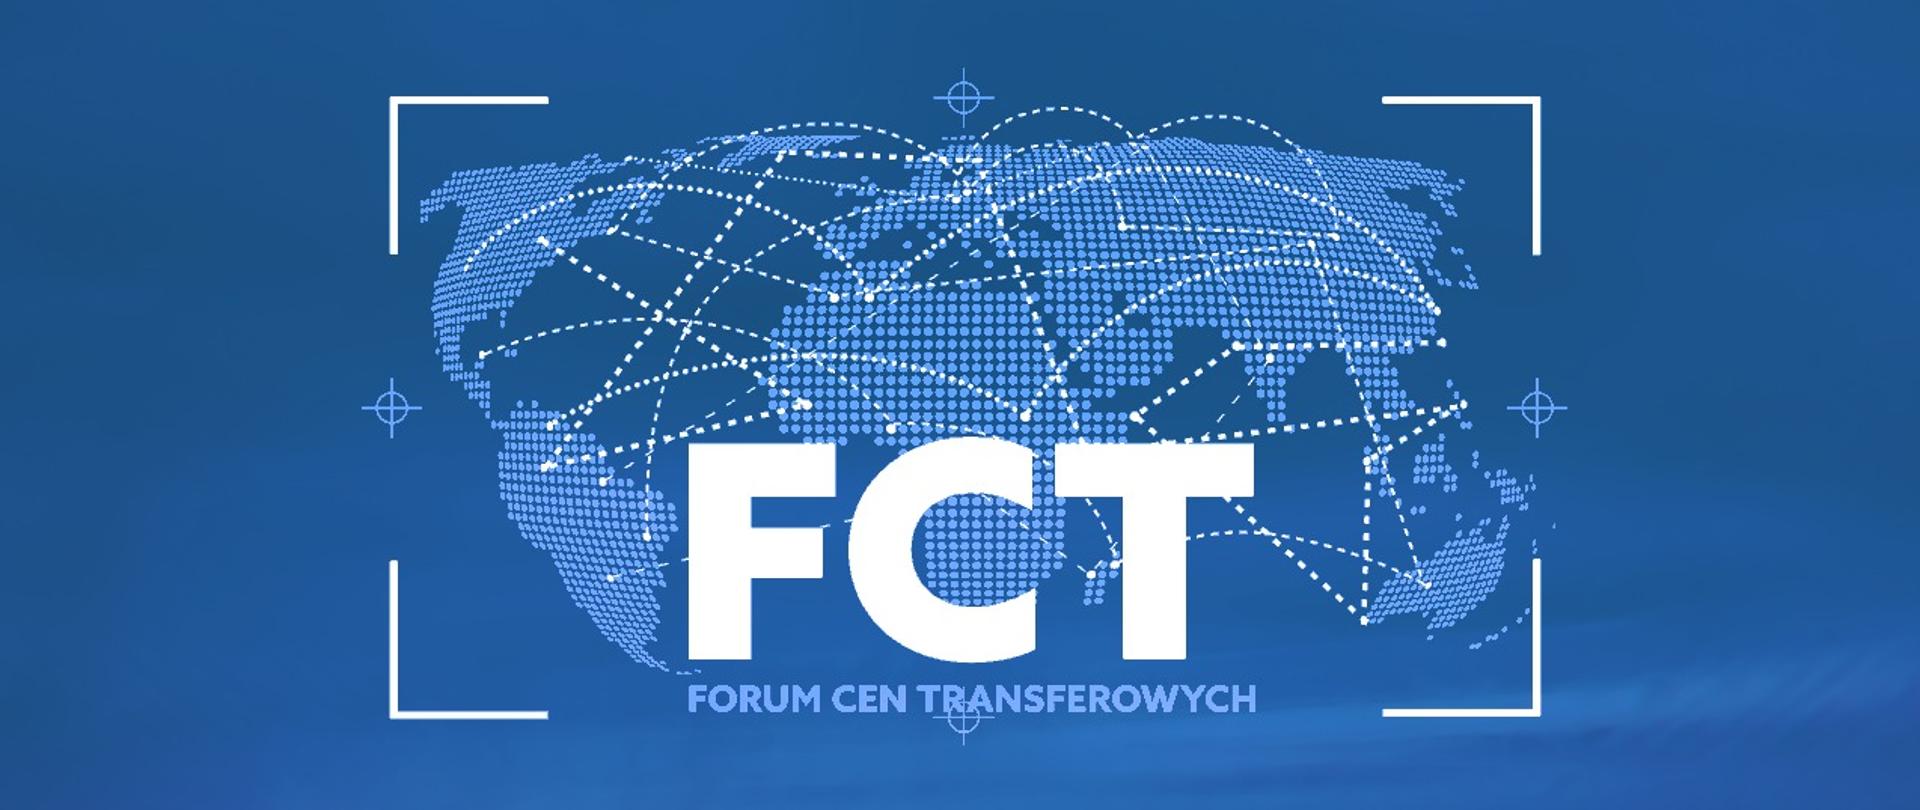 Napis Forum Cen Transferowych, w tle mapa świata